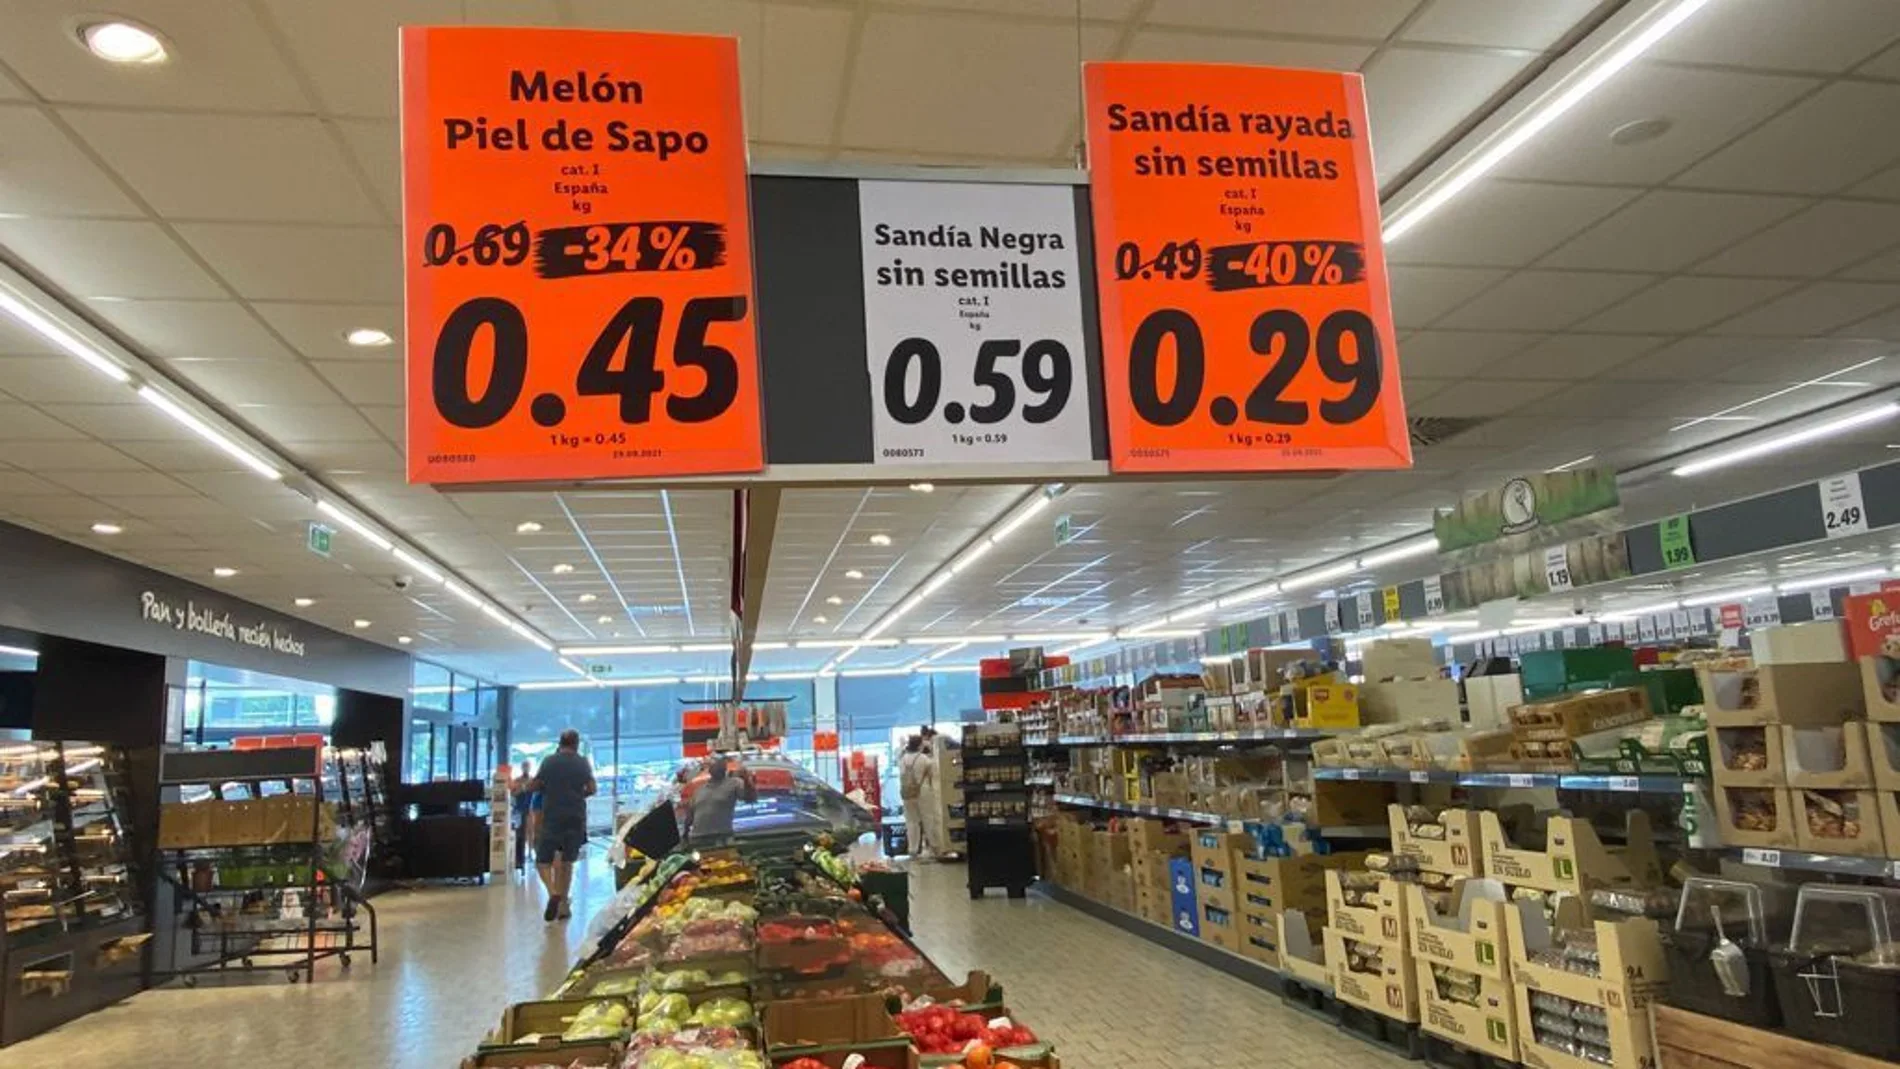 Imagen de la oferta del supermercado Lidl